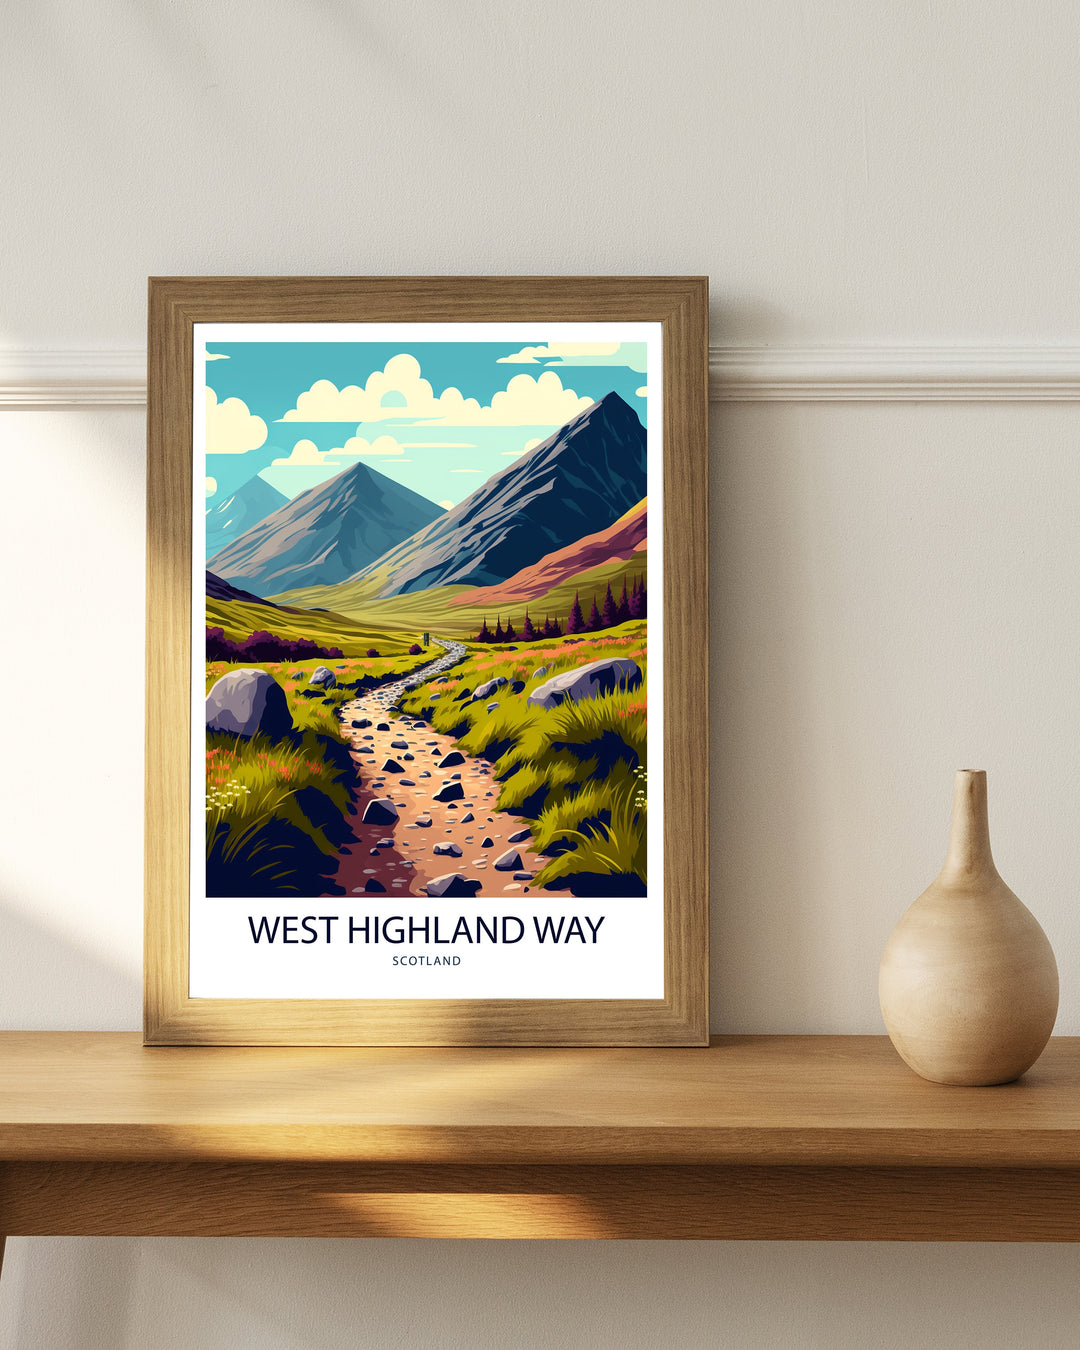 West Highland Way Scotland Travel Poster, Art Poster, Wall Art, Irish Art Poster